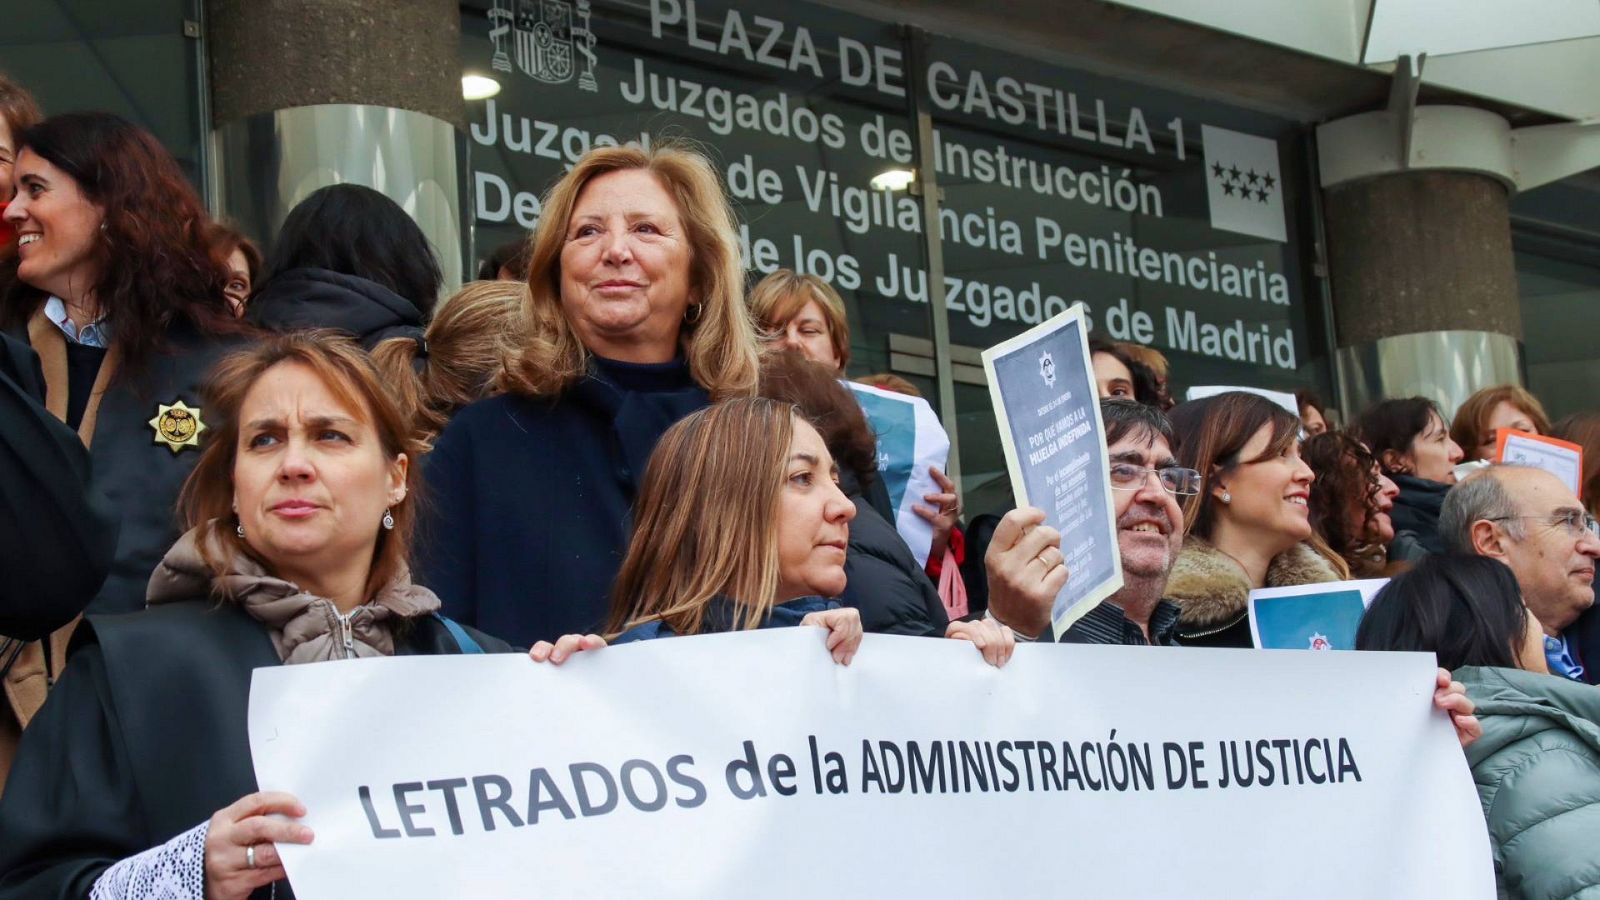 Imagen de archivo una concentración de letrados de la administración de Justicia de la Comunidad de Madrid en los juzgados de la Plaza de Castilla.